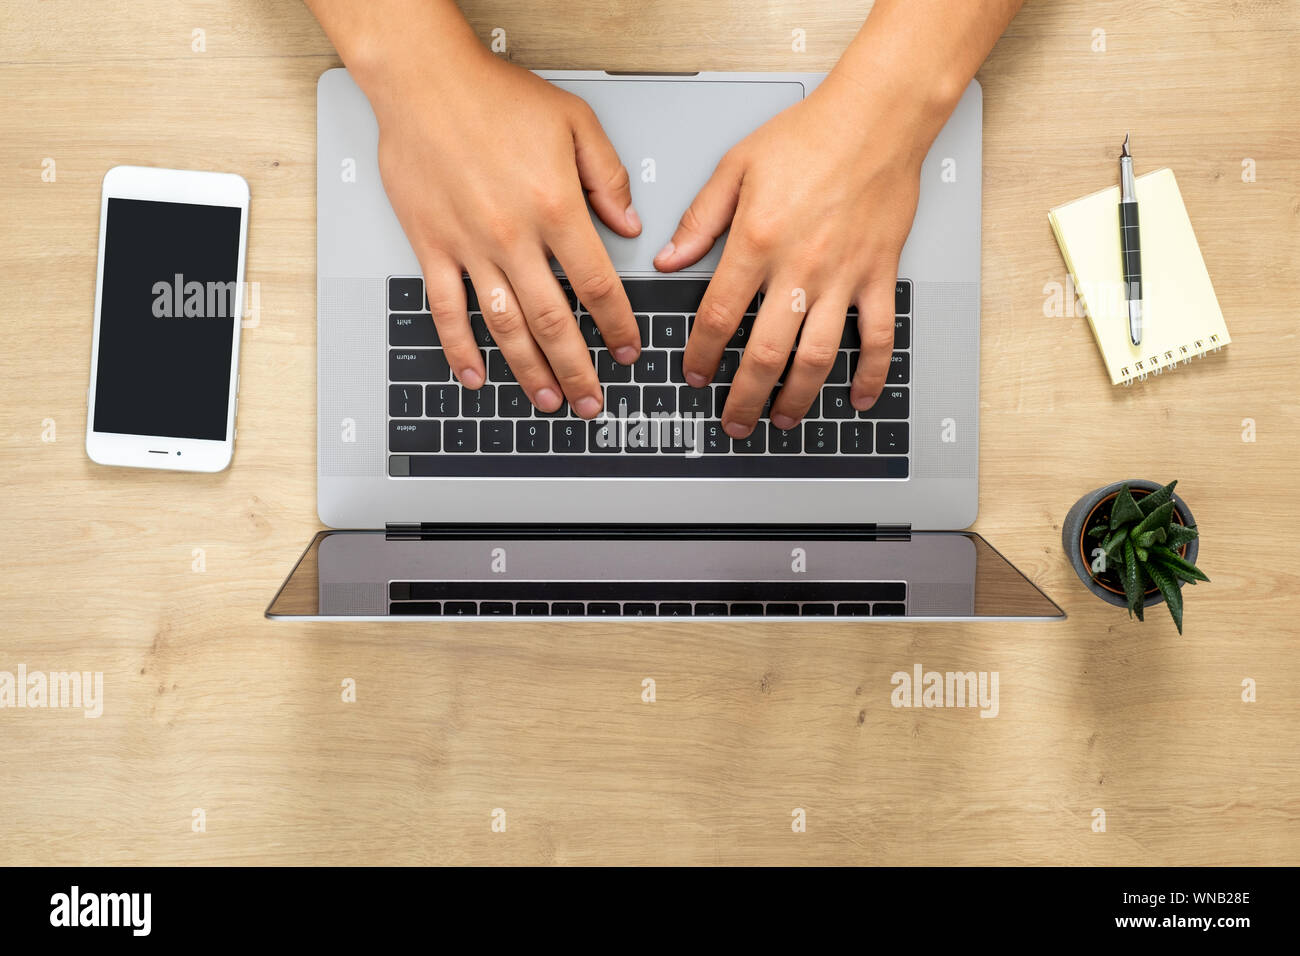 Ansicht von oben menschliche Hände arbeiten an modernen Laptop, online surfen, indem Sie einen Text, Surfen im Internet. Flach Holz Büro Schreibtisch Tisch mit Laptop, s Stockfoto